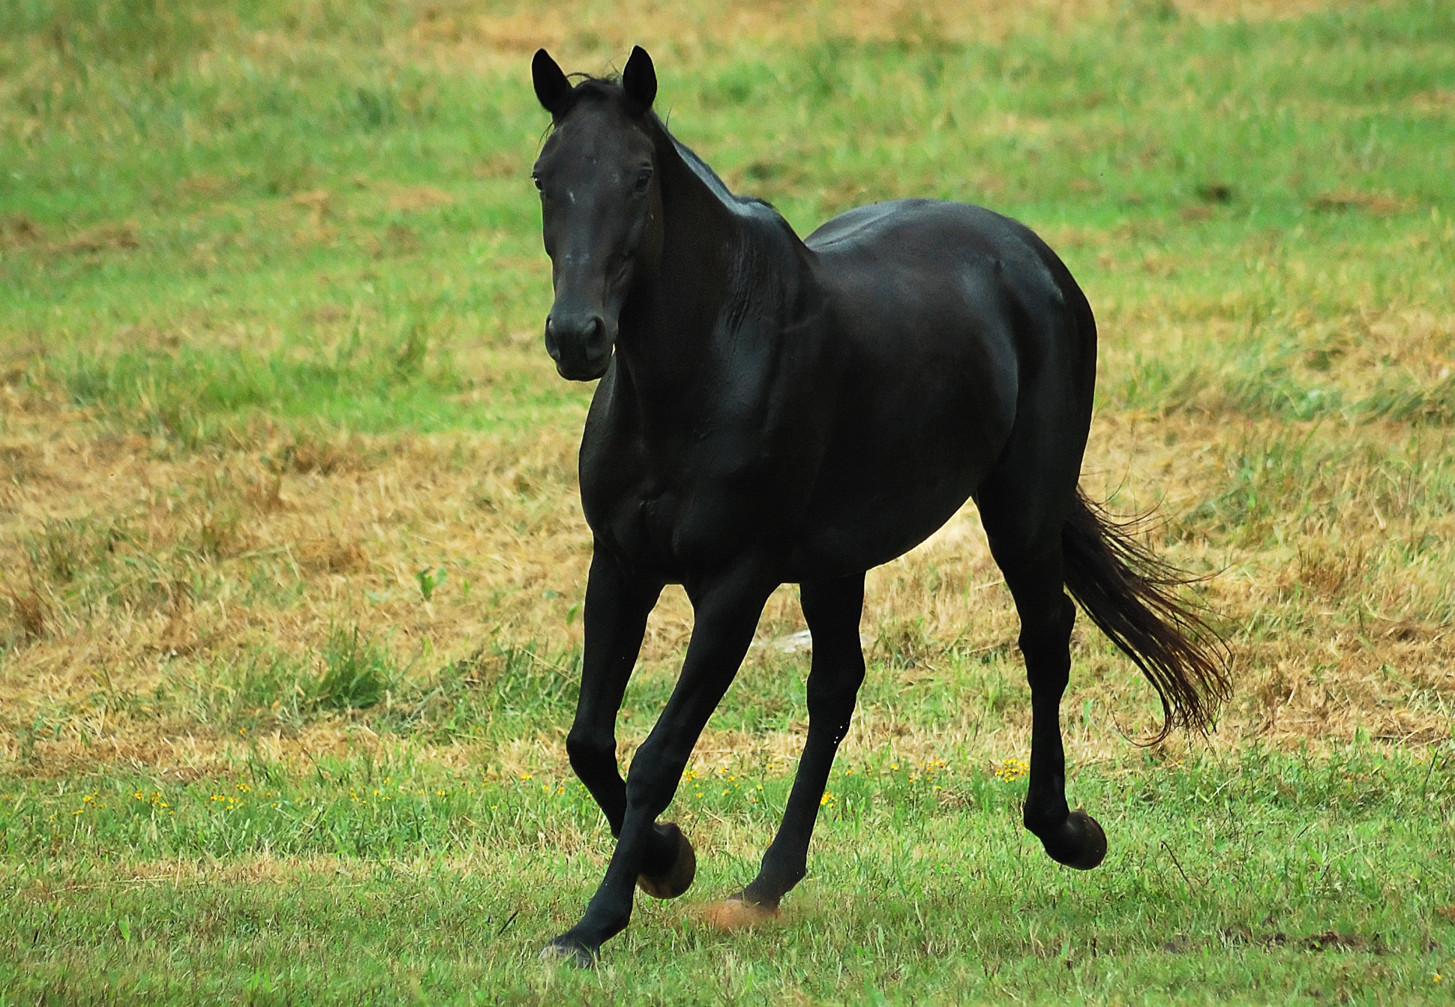 Beautiful Black Horse